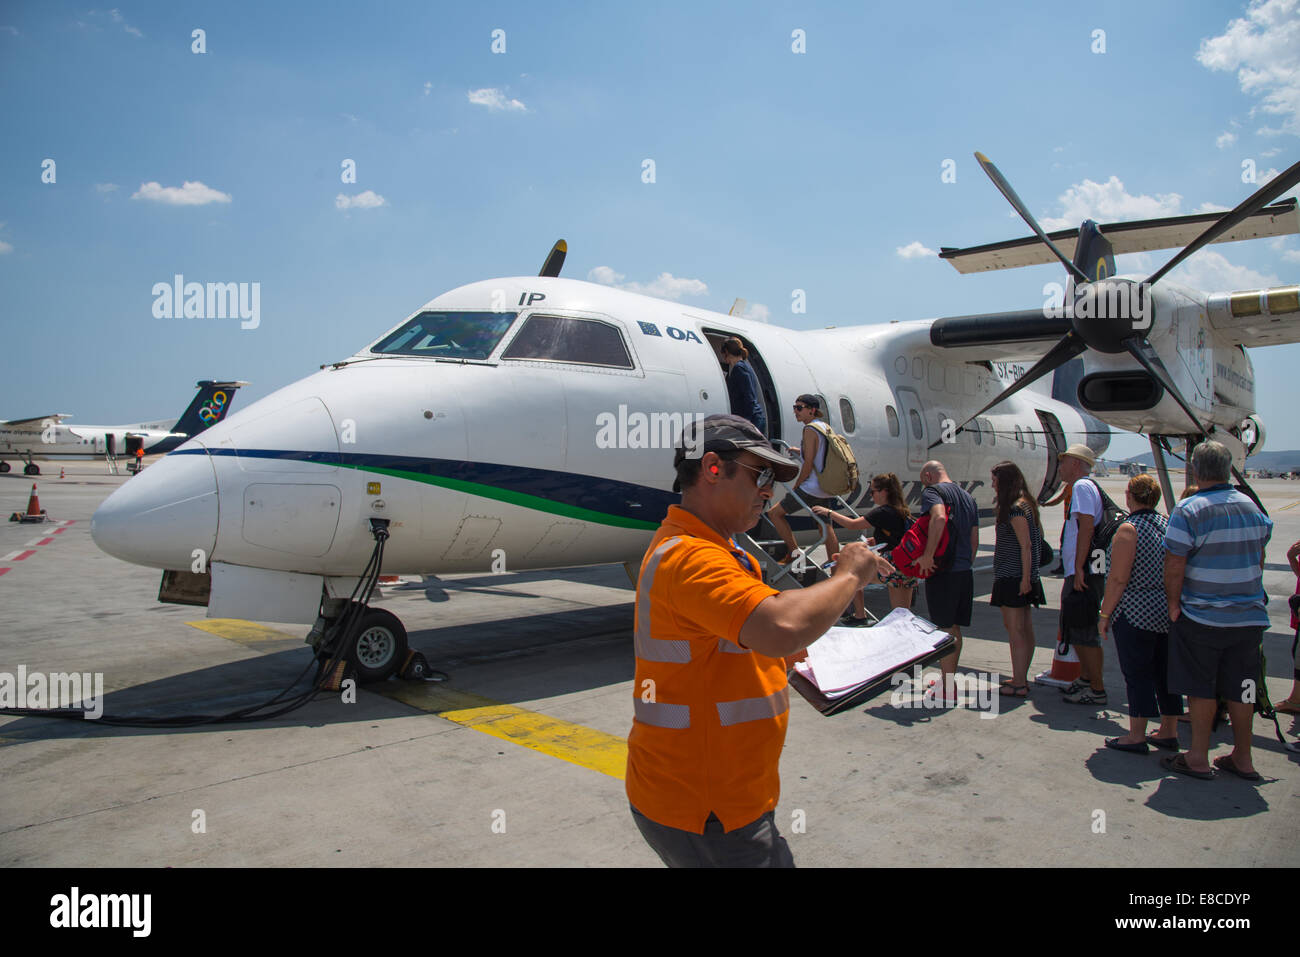 Les touristes d'embarquer dans un petit avion proppelor à Athènes, Grèce Banque D'Images